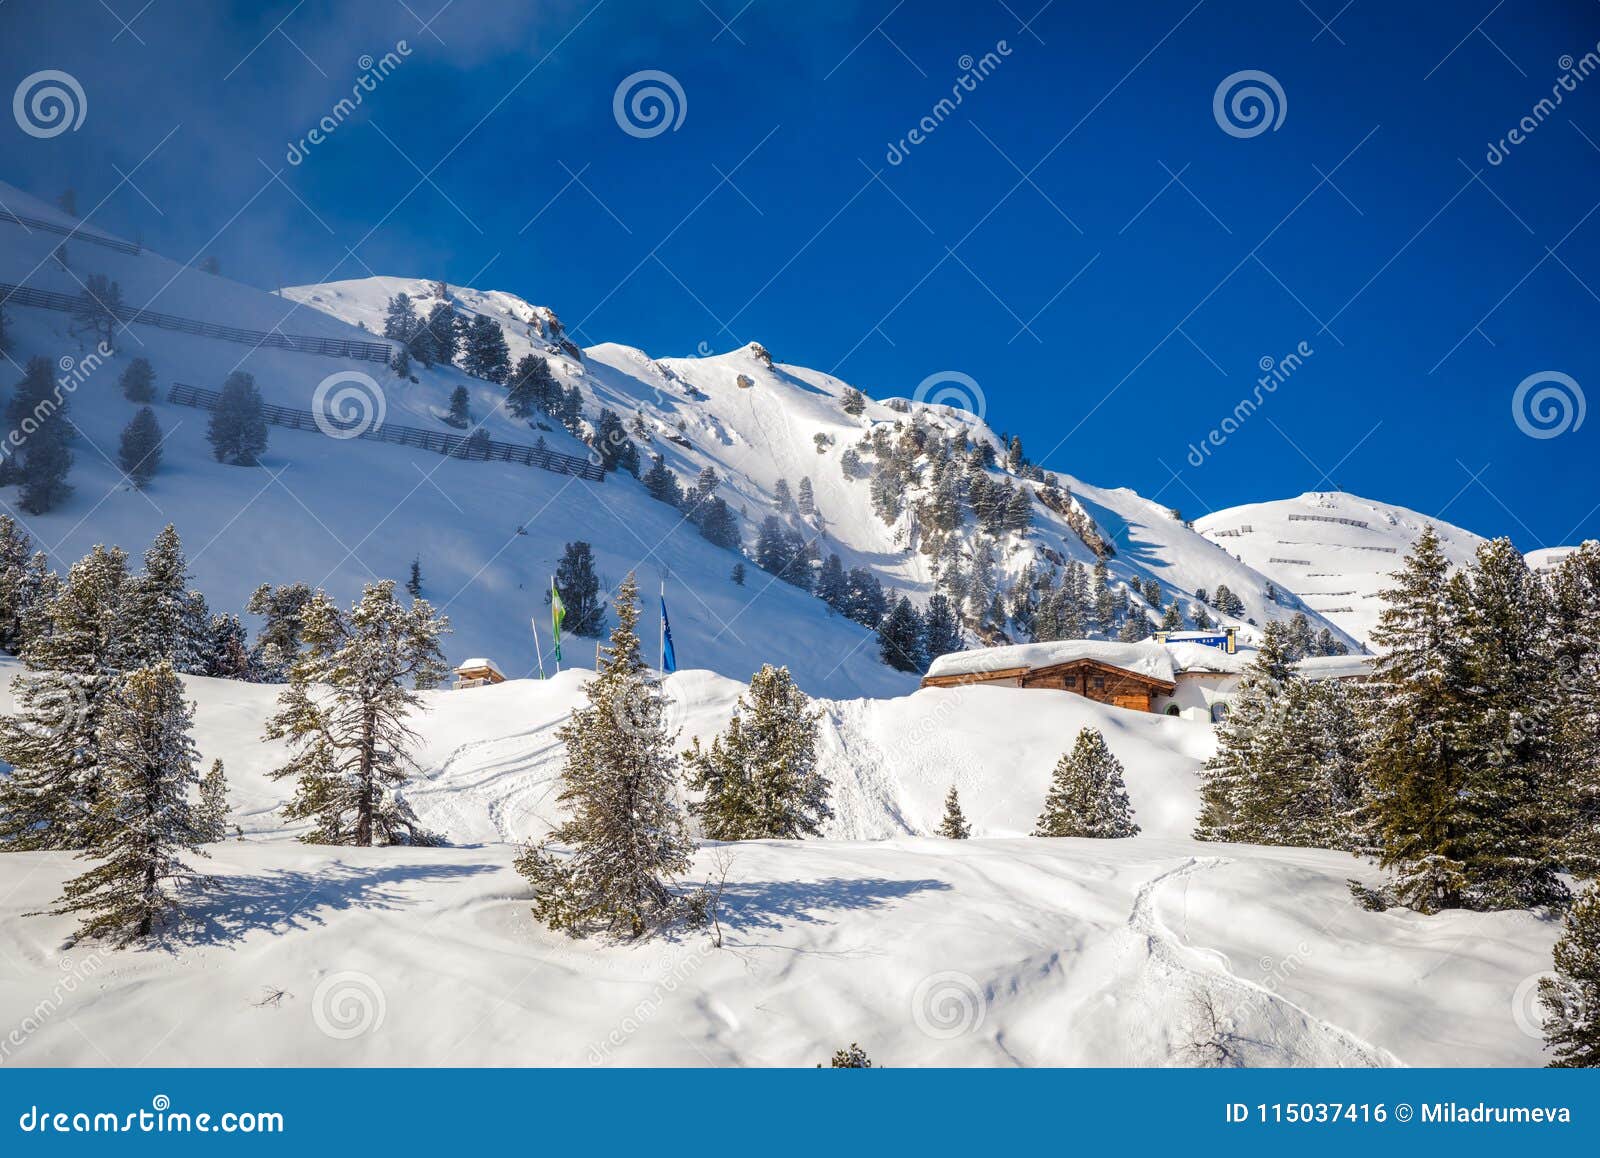 snowy landscape - winter ski resort in austria - hochzillertal